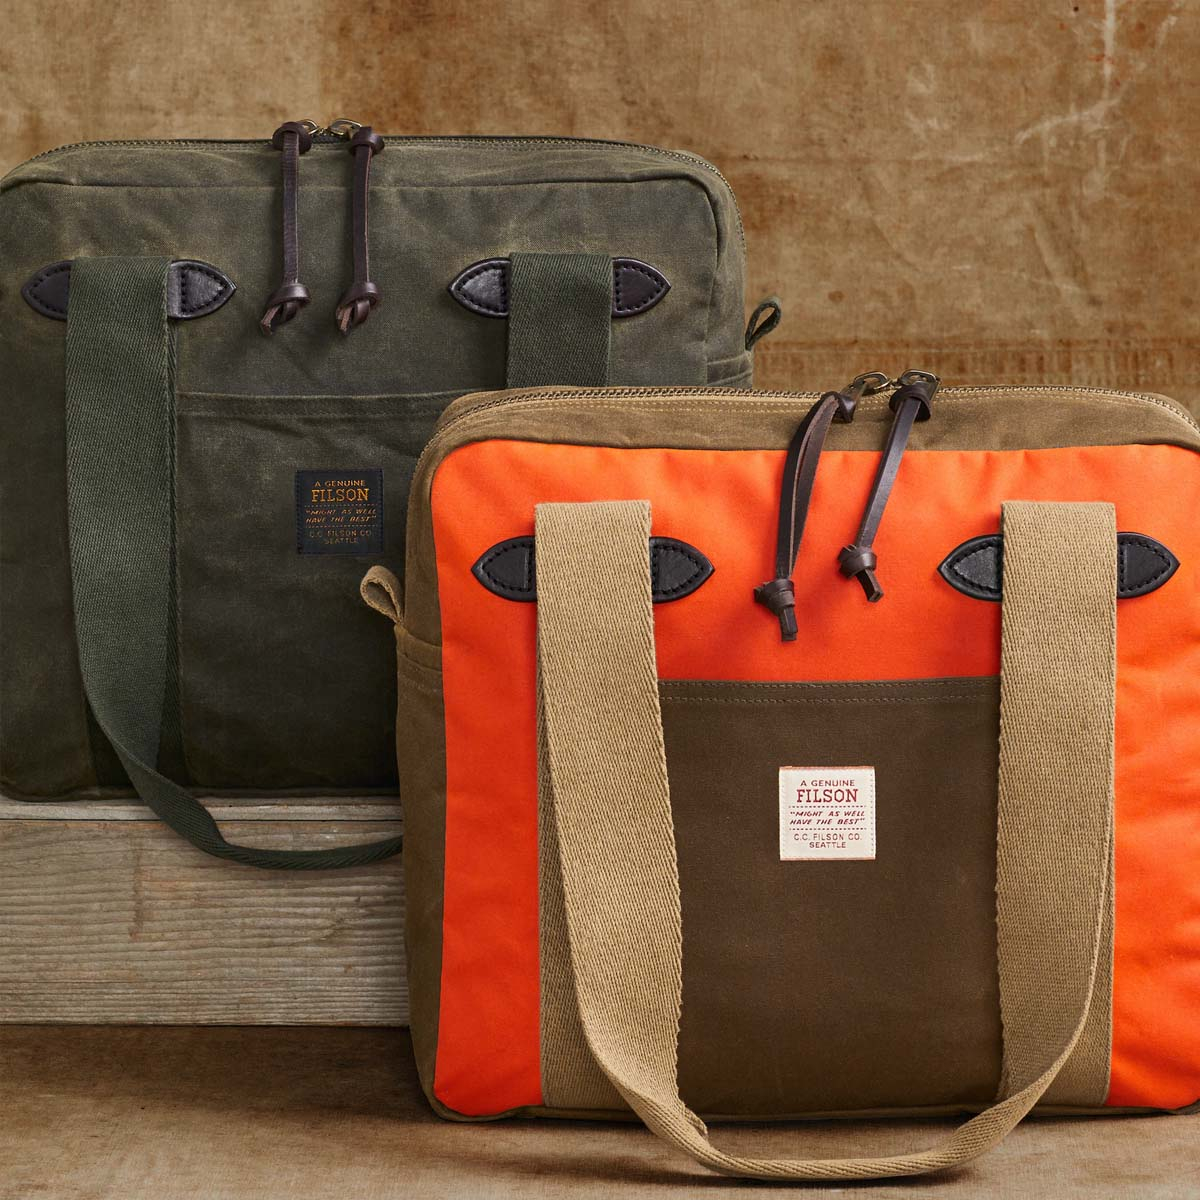 Filson Tin Cloth Tote Bag With Zipper Dark Tan/Flame, een klassiek ogende shopper ontworpen voor het gemakkelijk meenemen van spullen